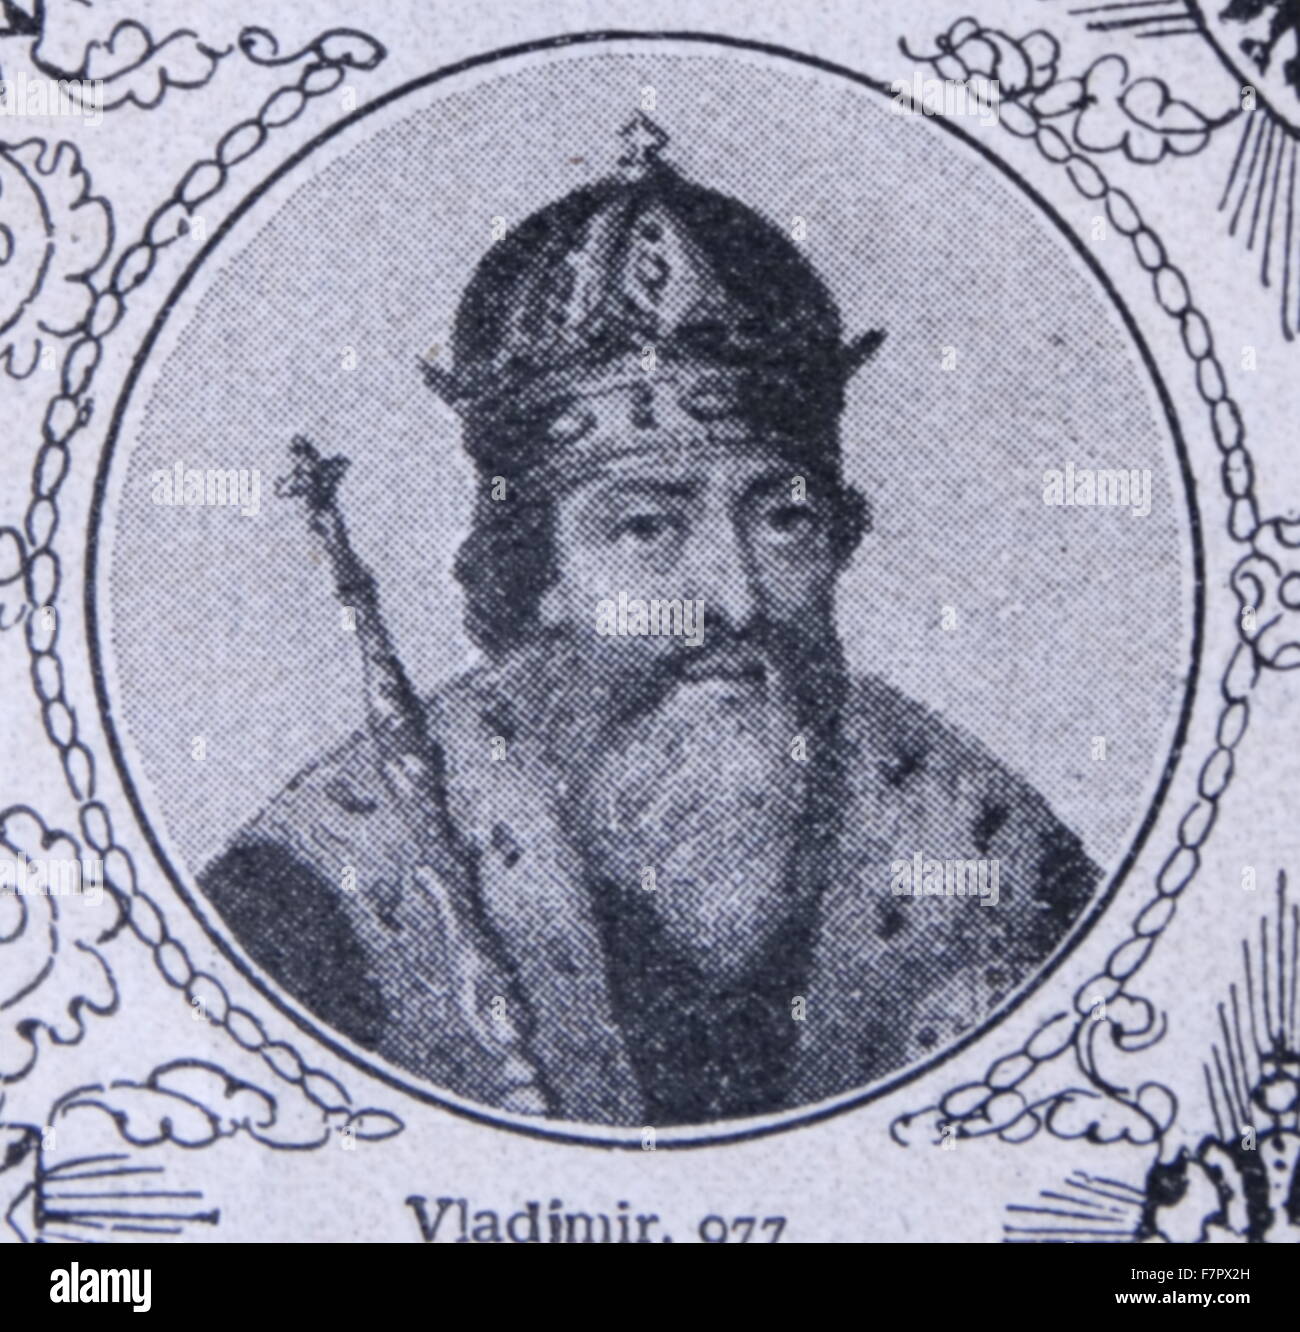 Vladimir Sviatoslavich le grand;c. 958 - 1015 prince de Novgorod., grand prince de Kiev, et gouverneur de la Rus' de 980 à 1015. Banque D'Images